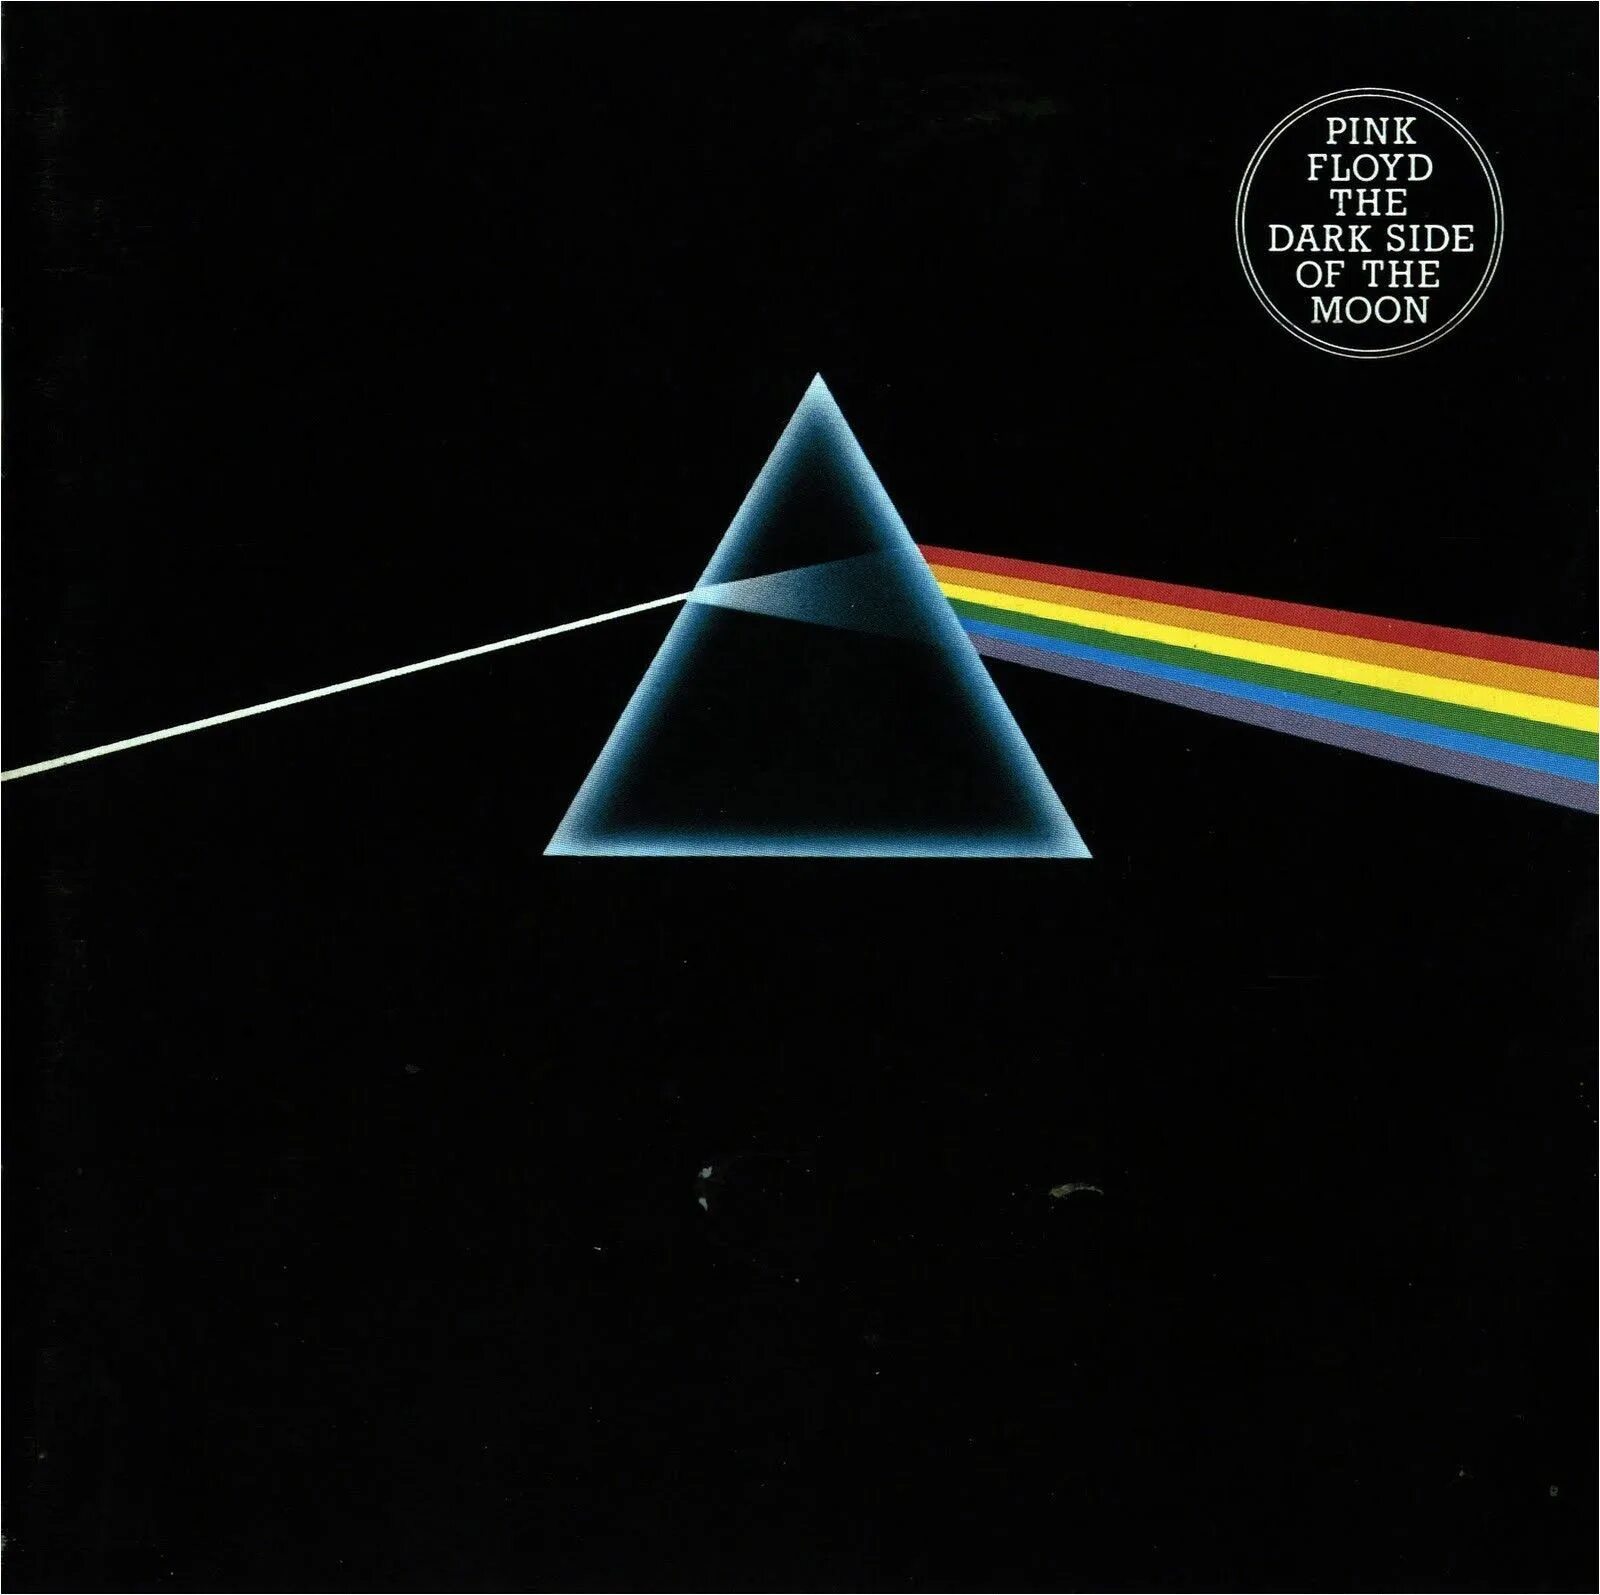 Пинк флойд слушать обратная сторона луны альбом. Обложки пластинок Пинк Флойд. Пинк Флойд Dark Side of the Moon. Обратная сторона Луны альбом Pink Floyd. Pink Floyd 1973 the Dark Side of the Moon CD.